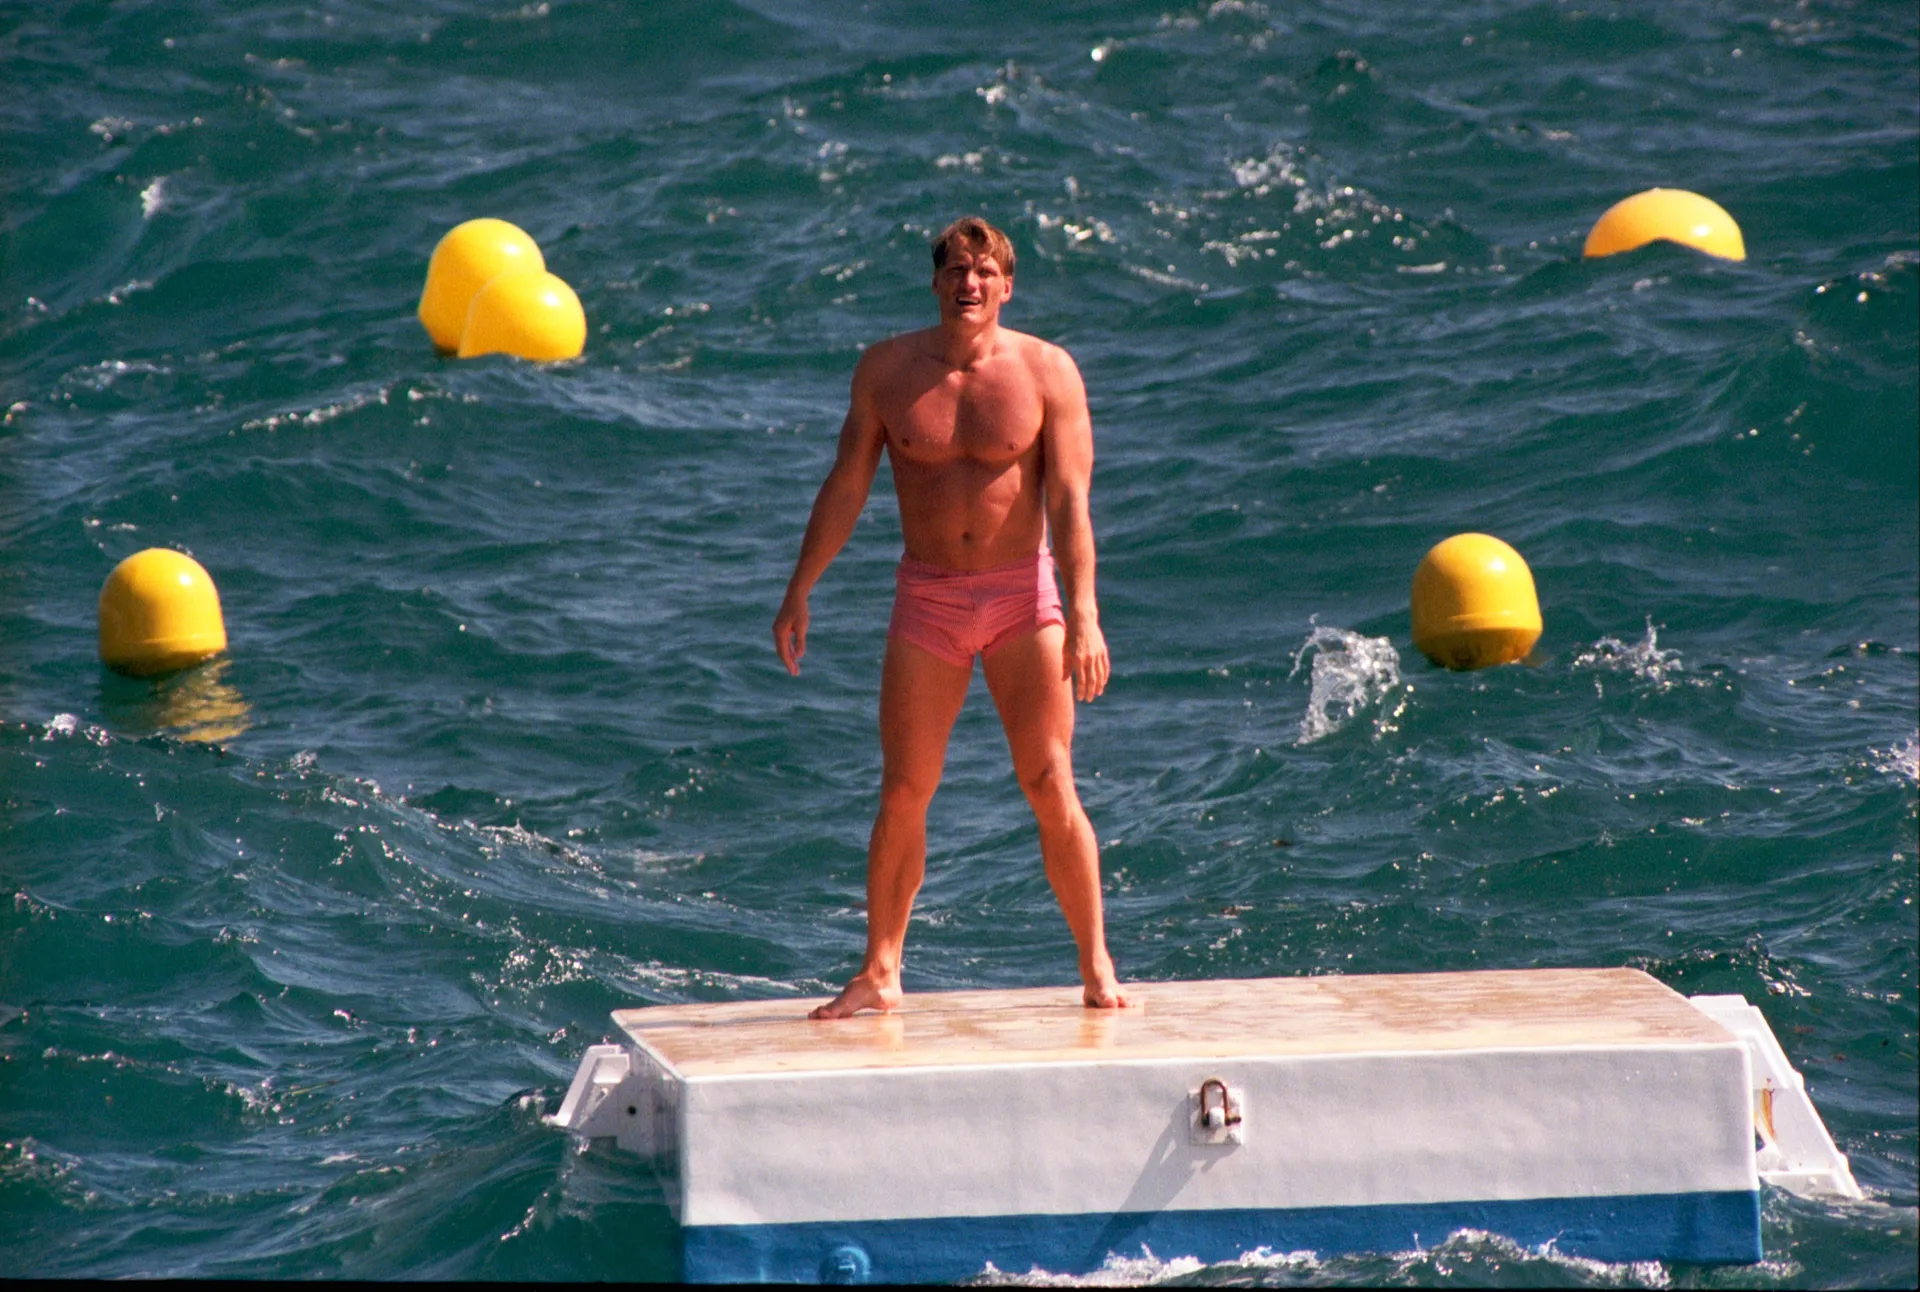 Będąc na najbardziej prestiżowym festiwalu filmowym ze wszystkich, dawny rywal Rocky’ego Balboa Dolph Lundgren od hotelowej siłow-ni wolał trening na pływakach (1994 rok)